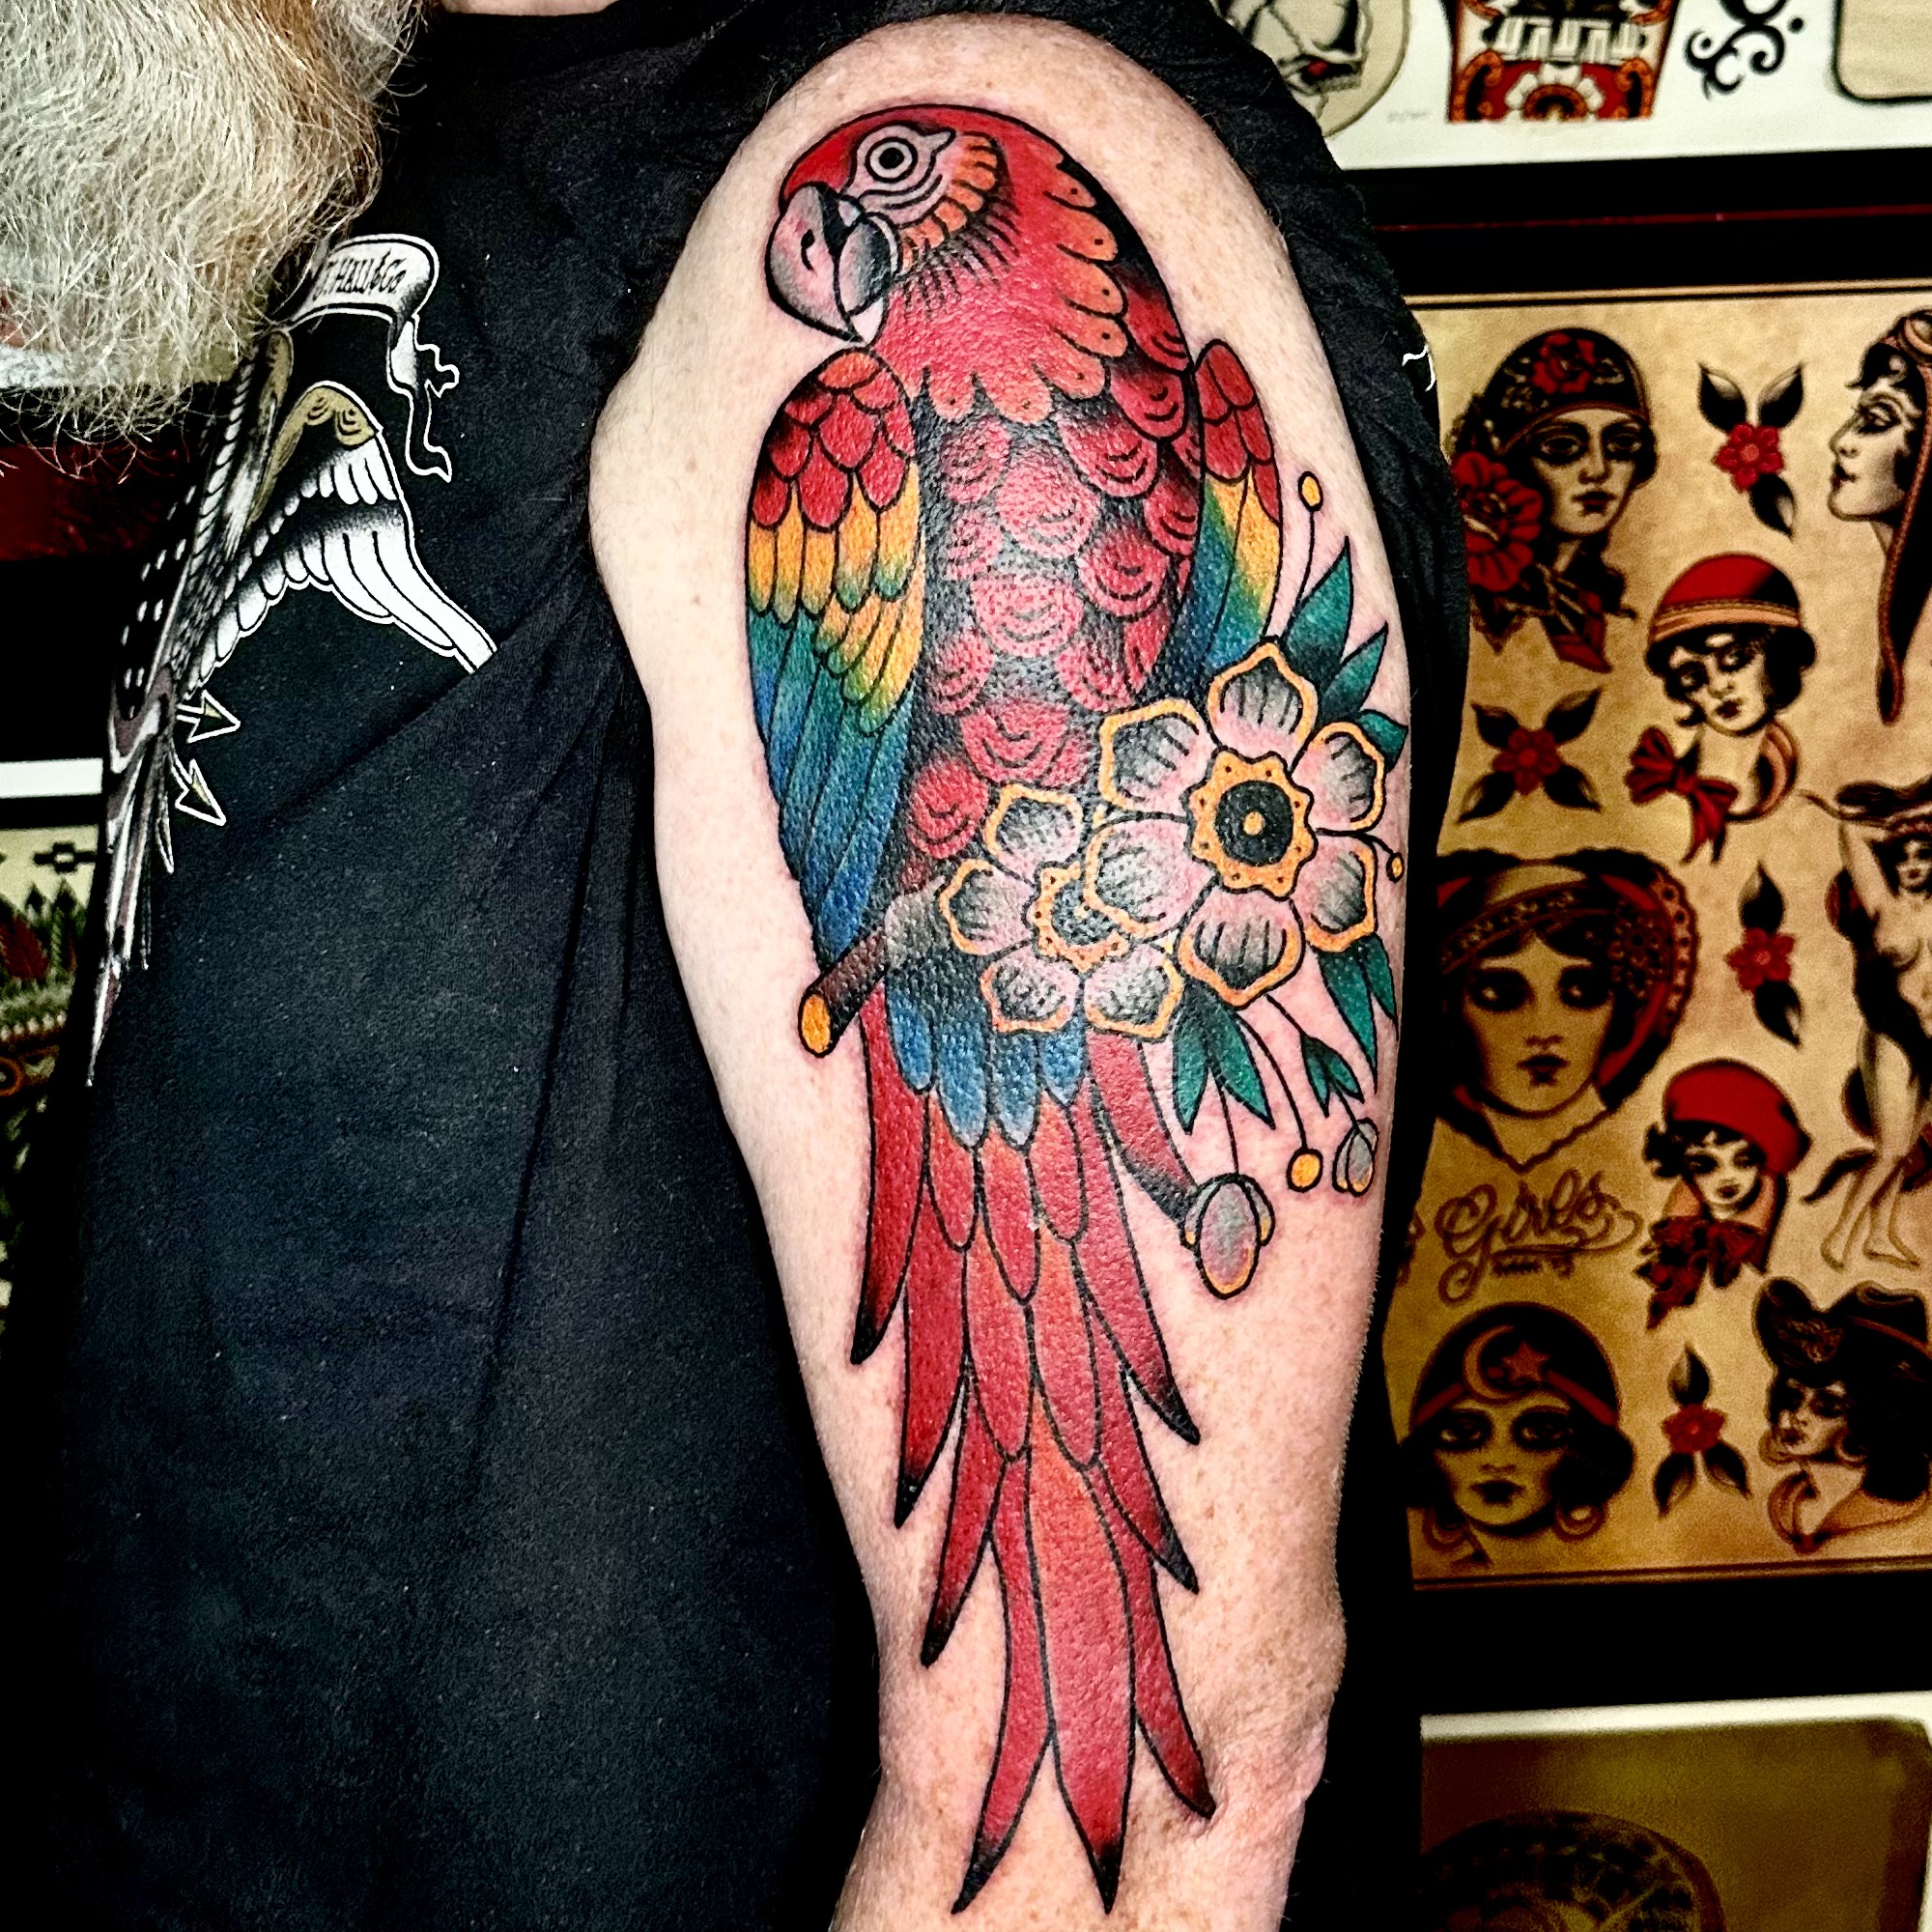 Tattoo from dallas tattoo shop in Texas